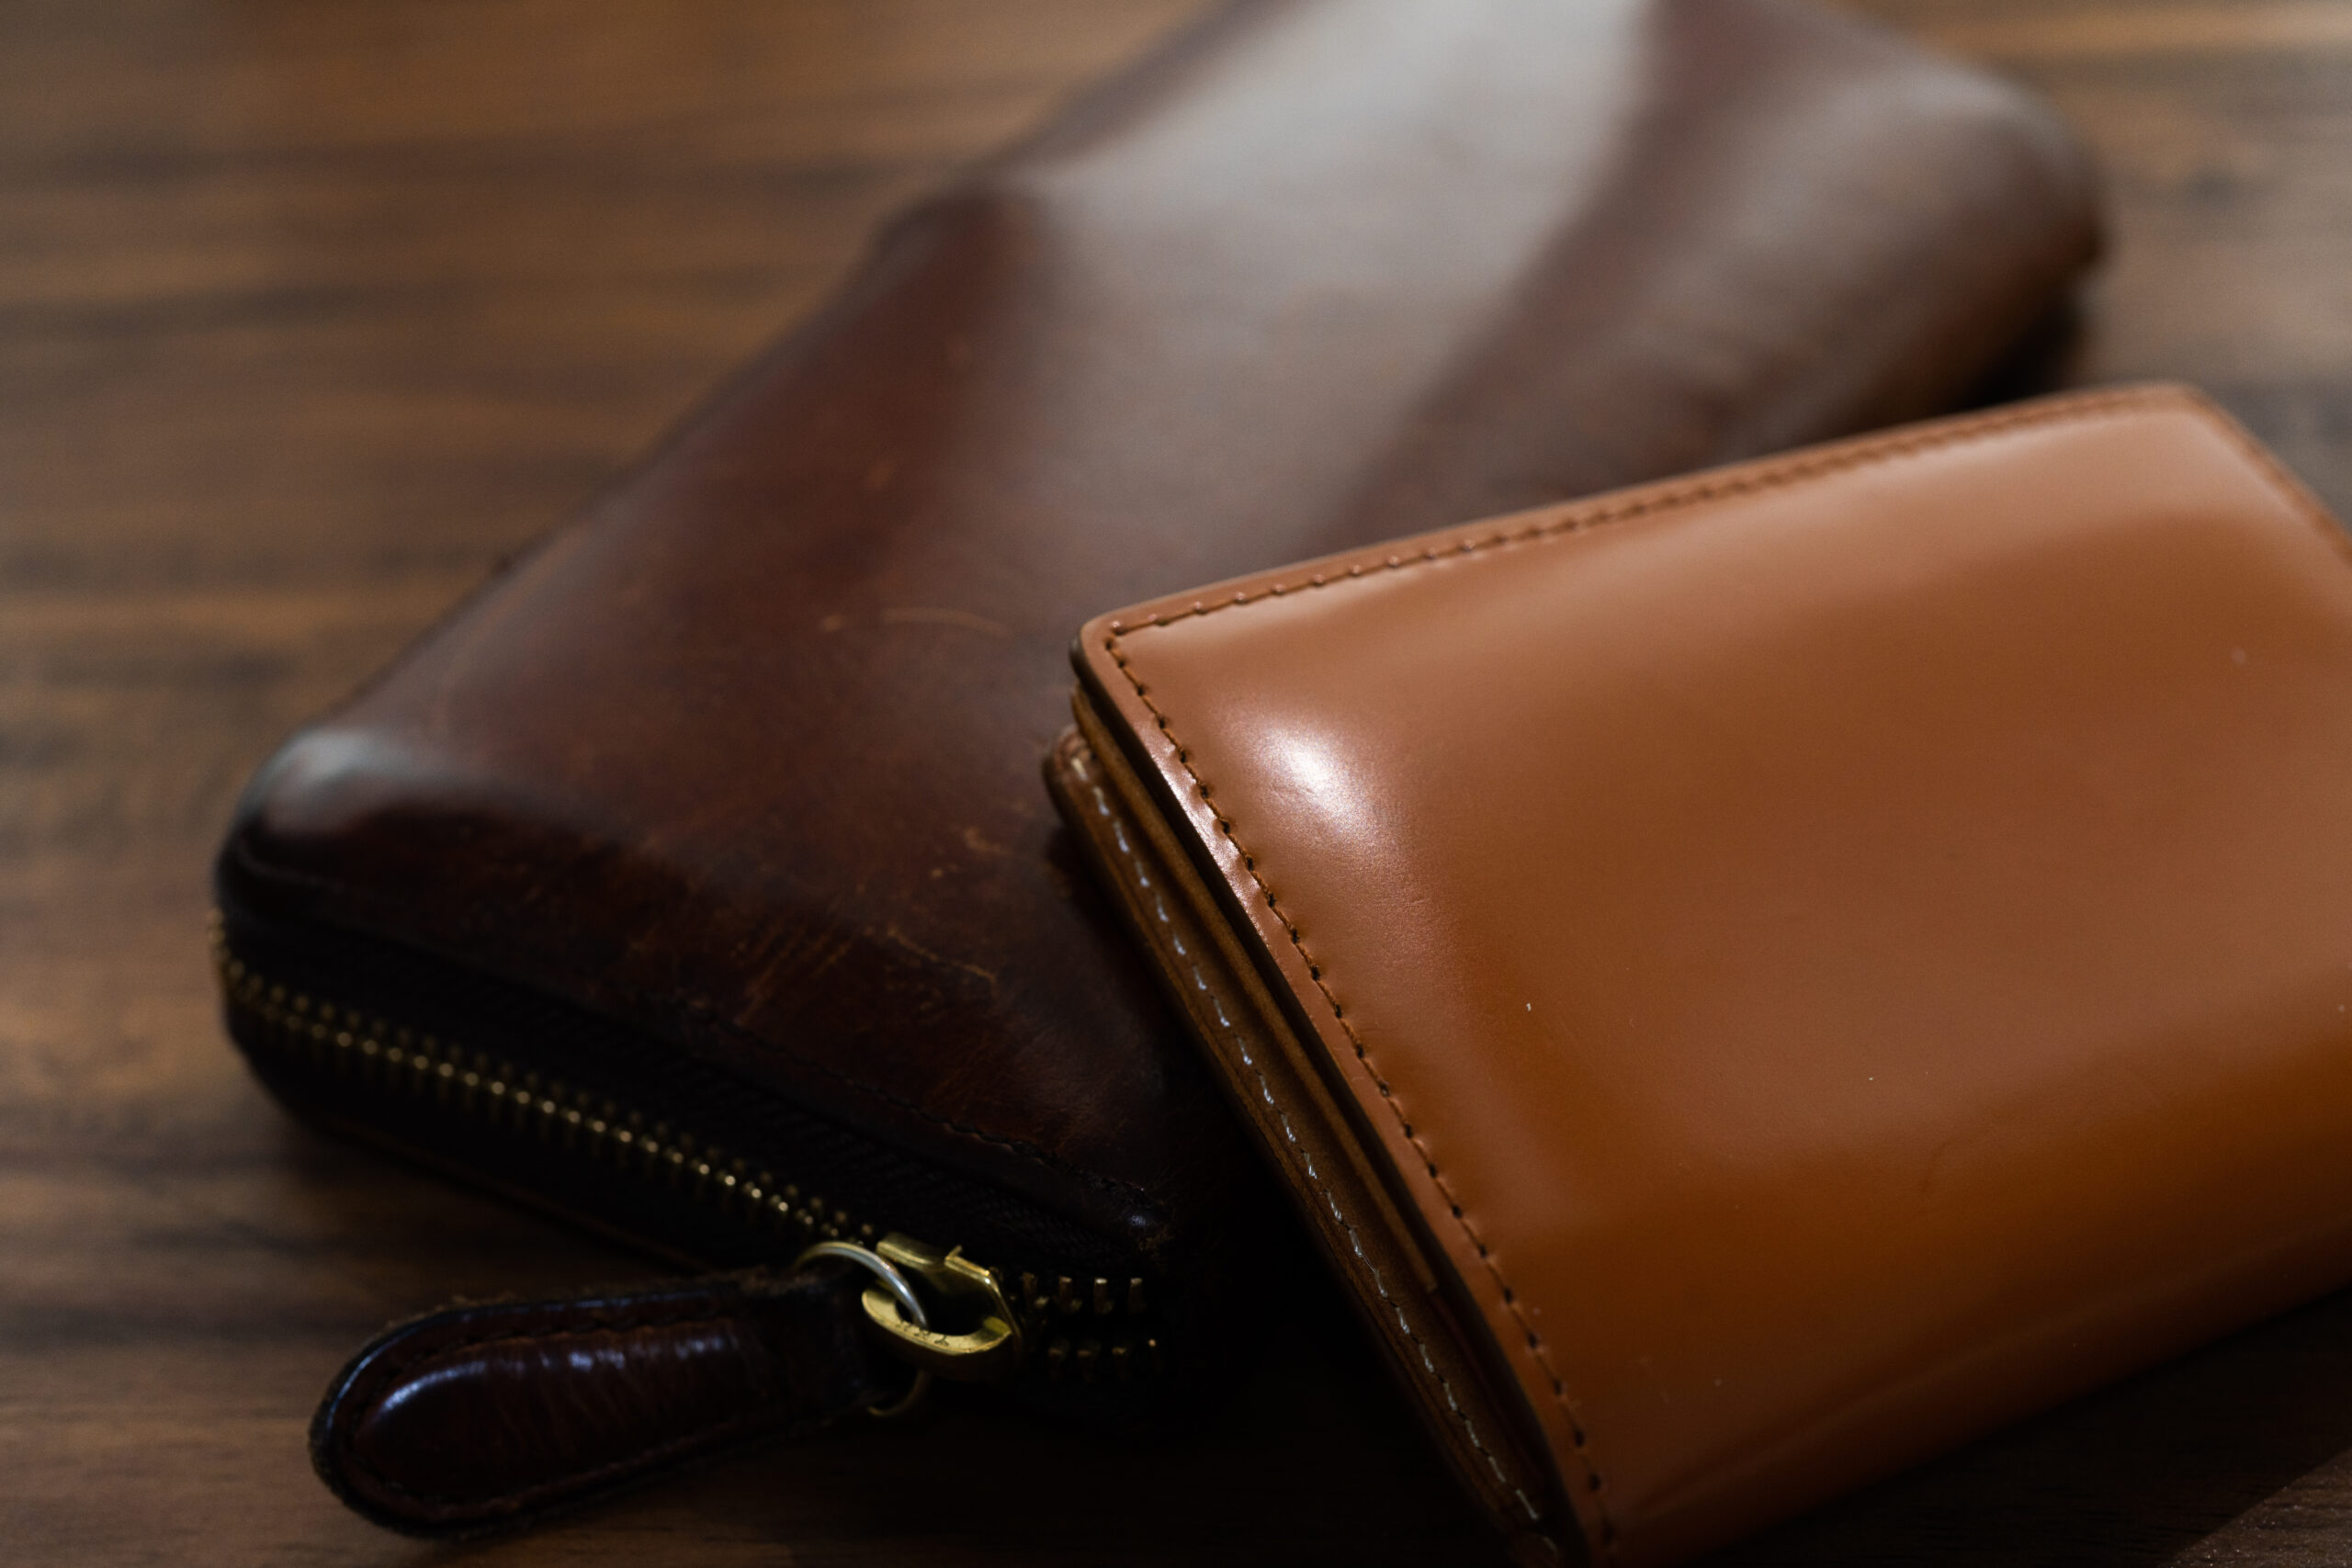 コードバン製の特徴的な財布